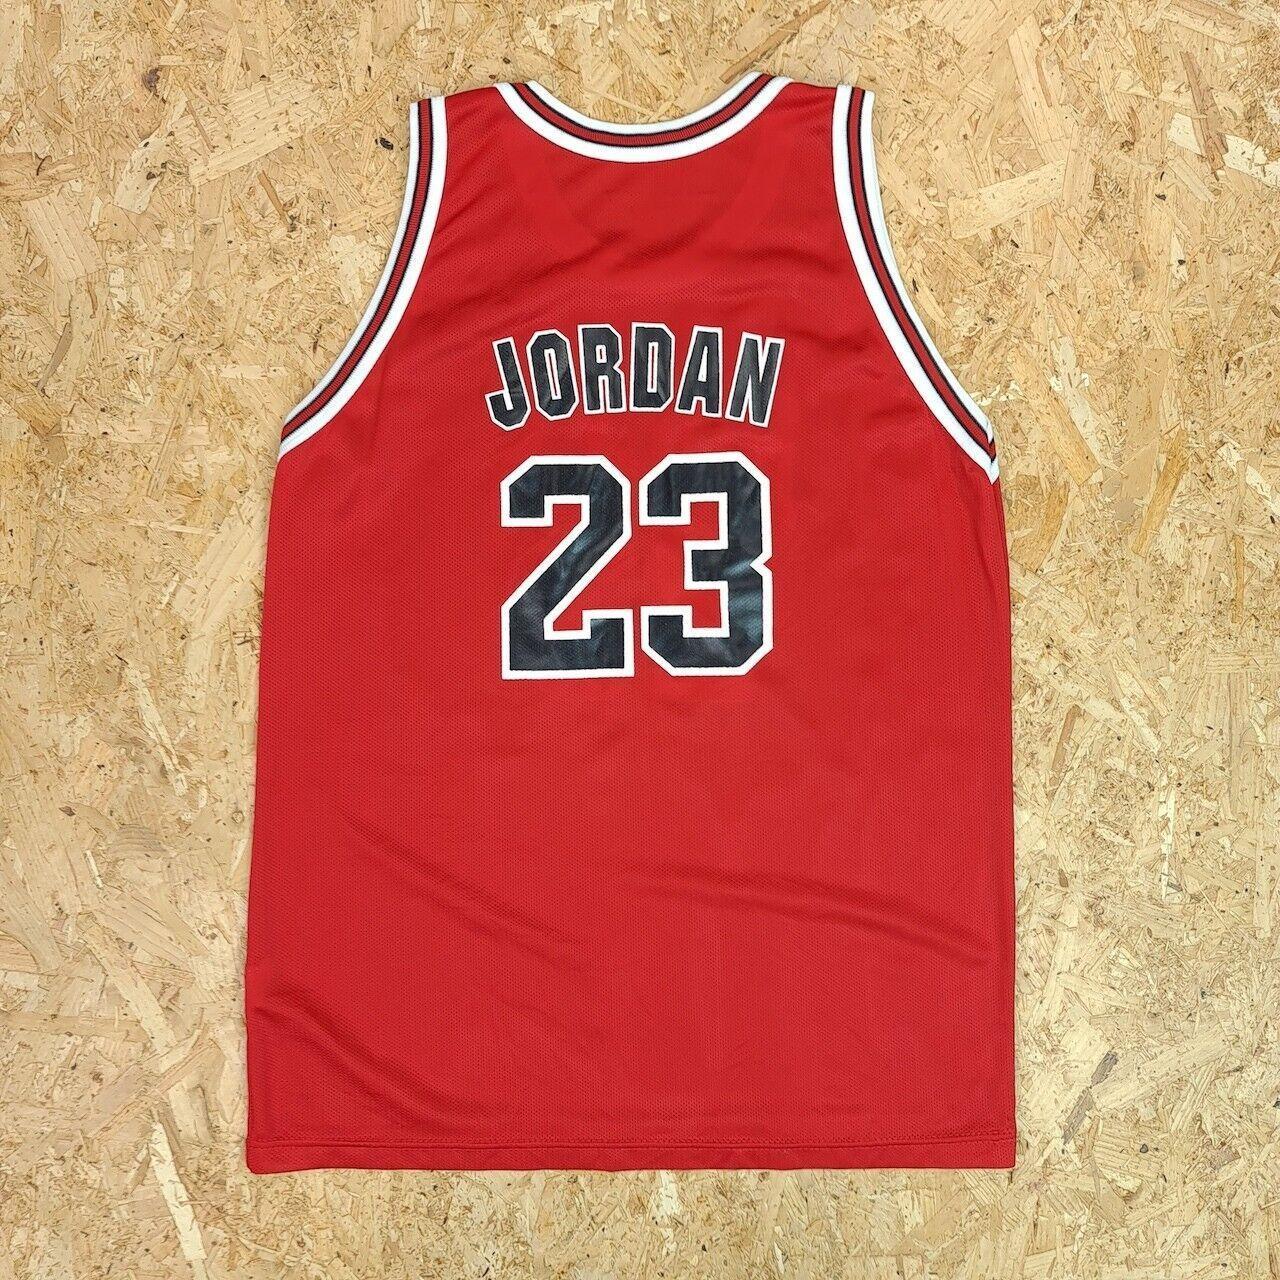 Old School Chicago Bulls Jordan Jersey. Unsure if - Depop